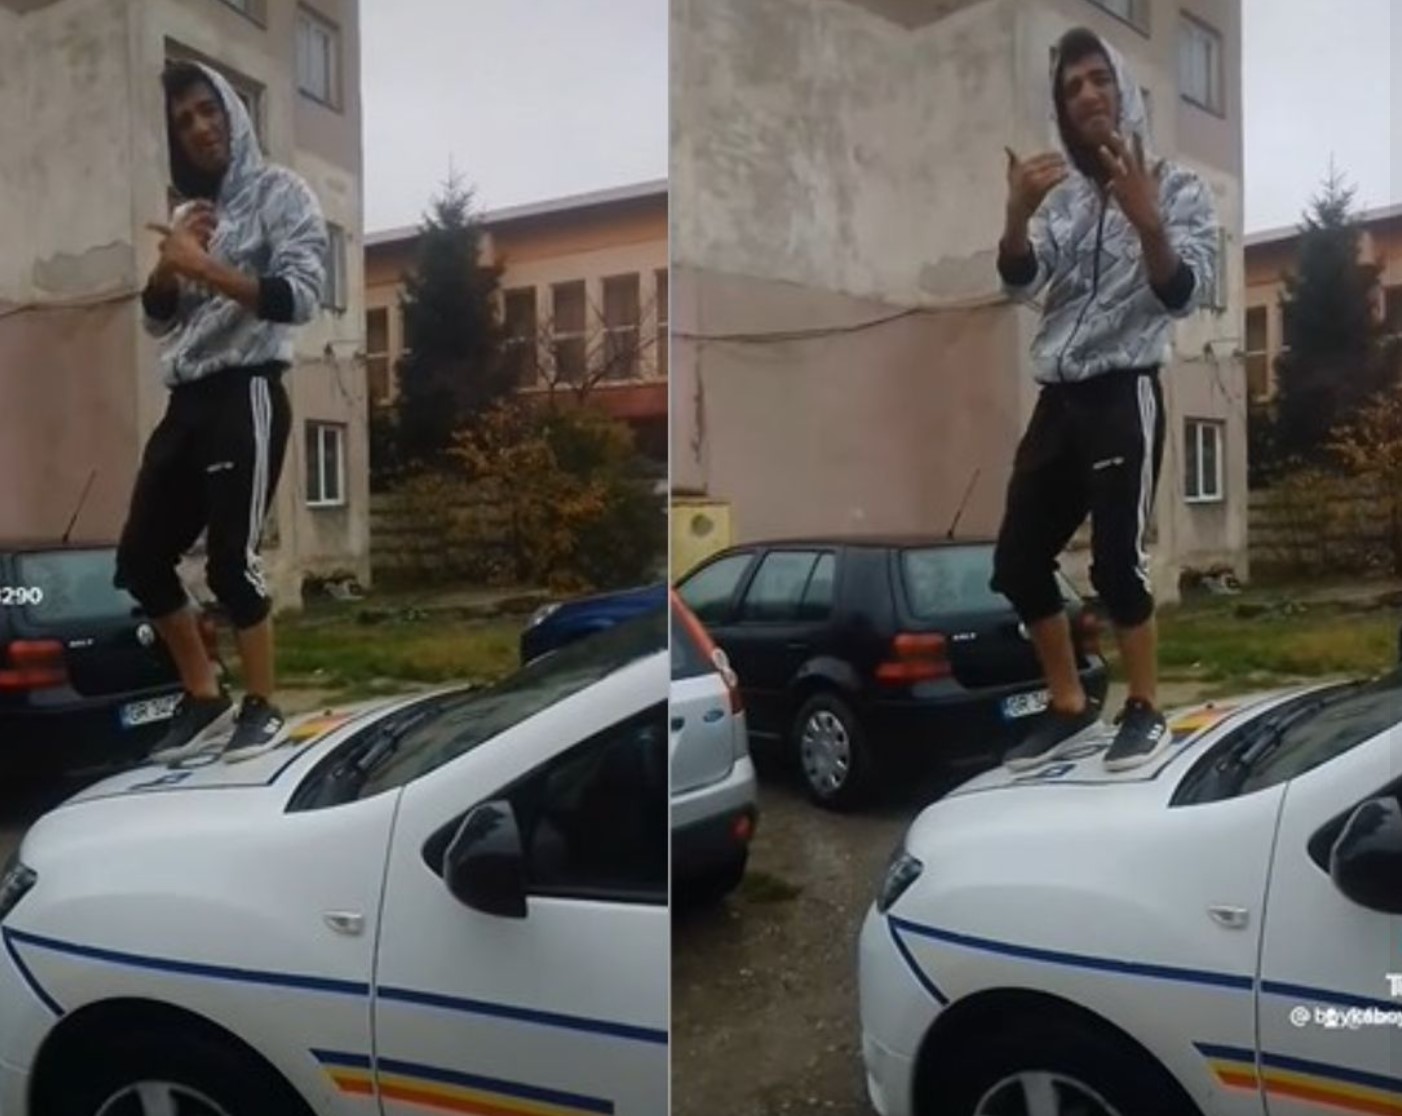 Poliția a ajuns bătaia de joc a infractorilor la Giurgiu